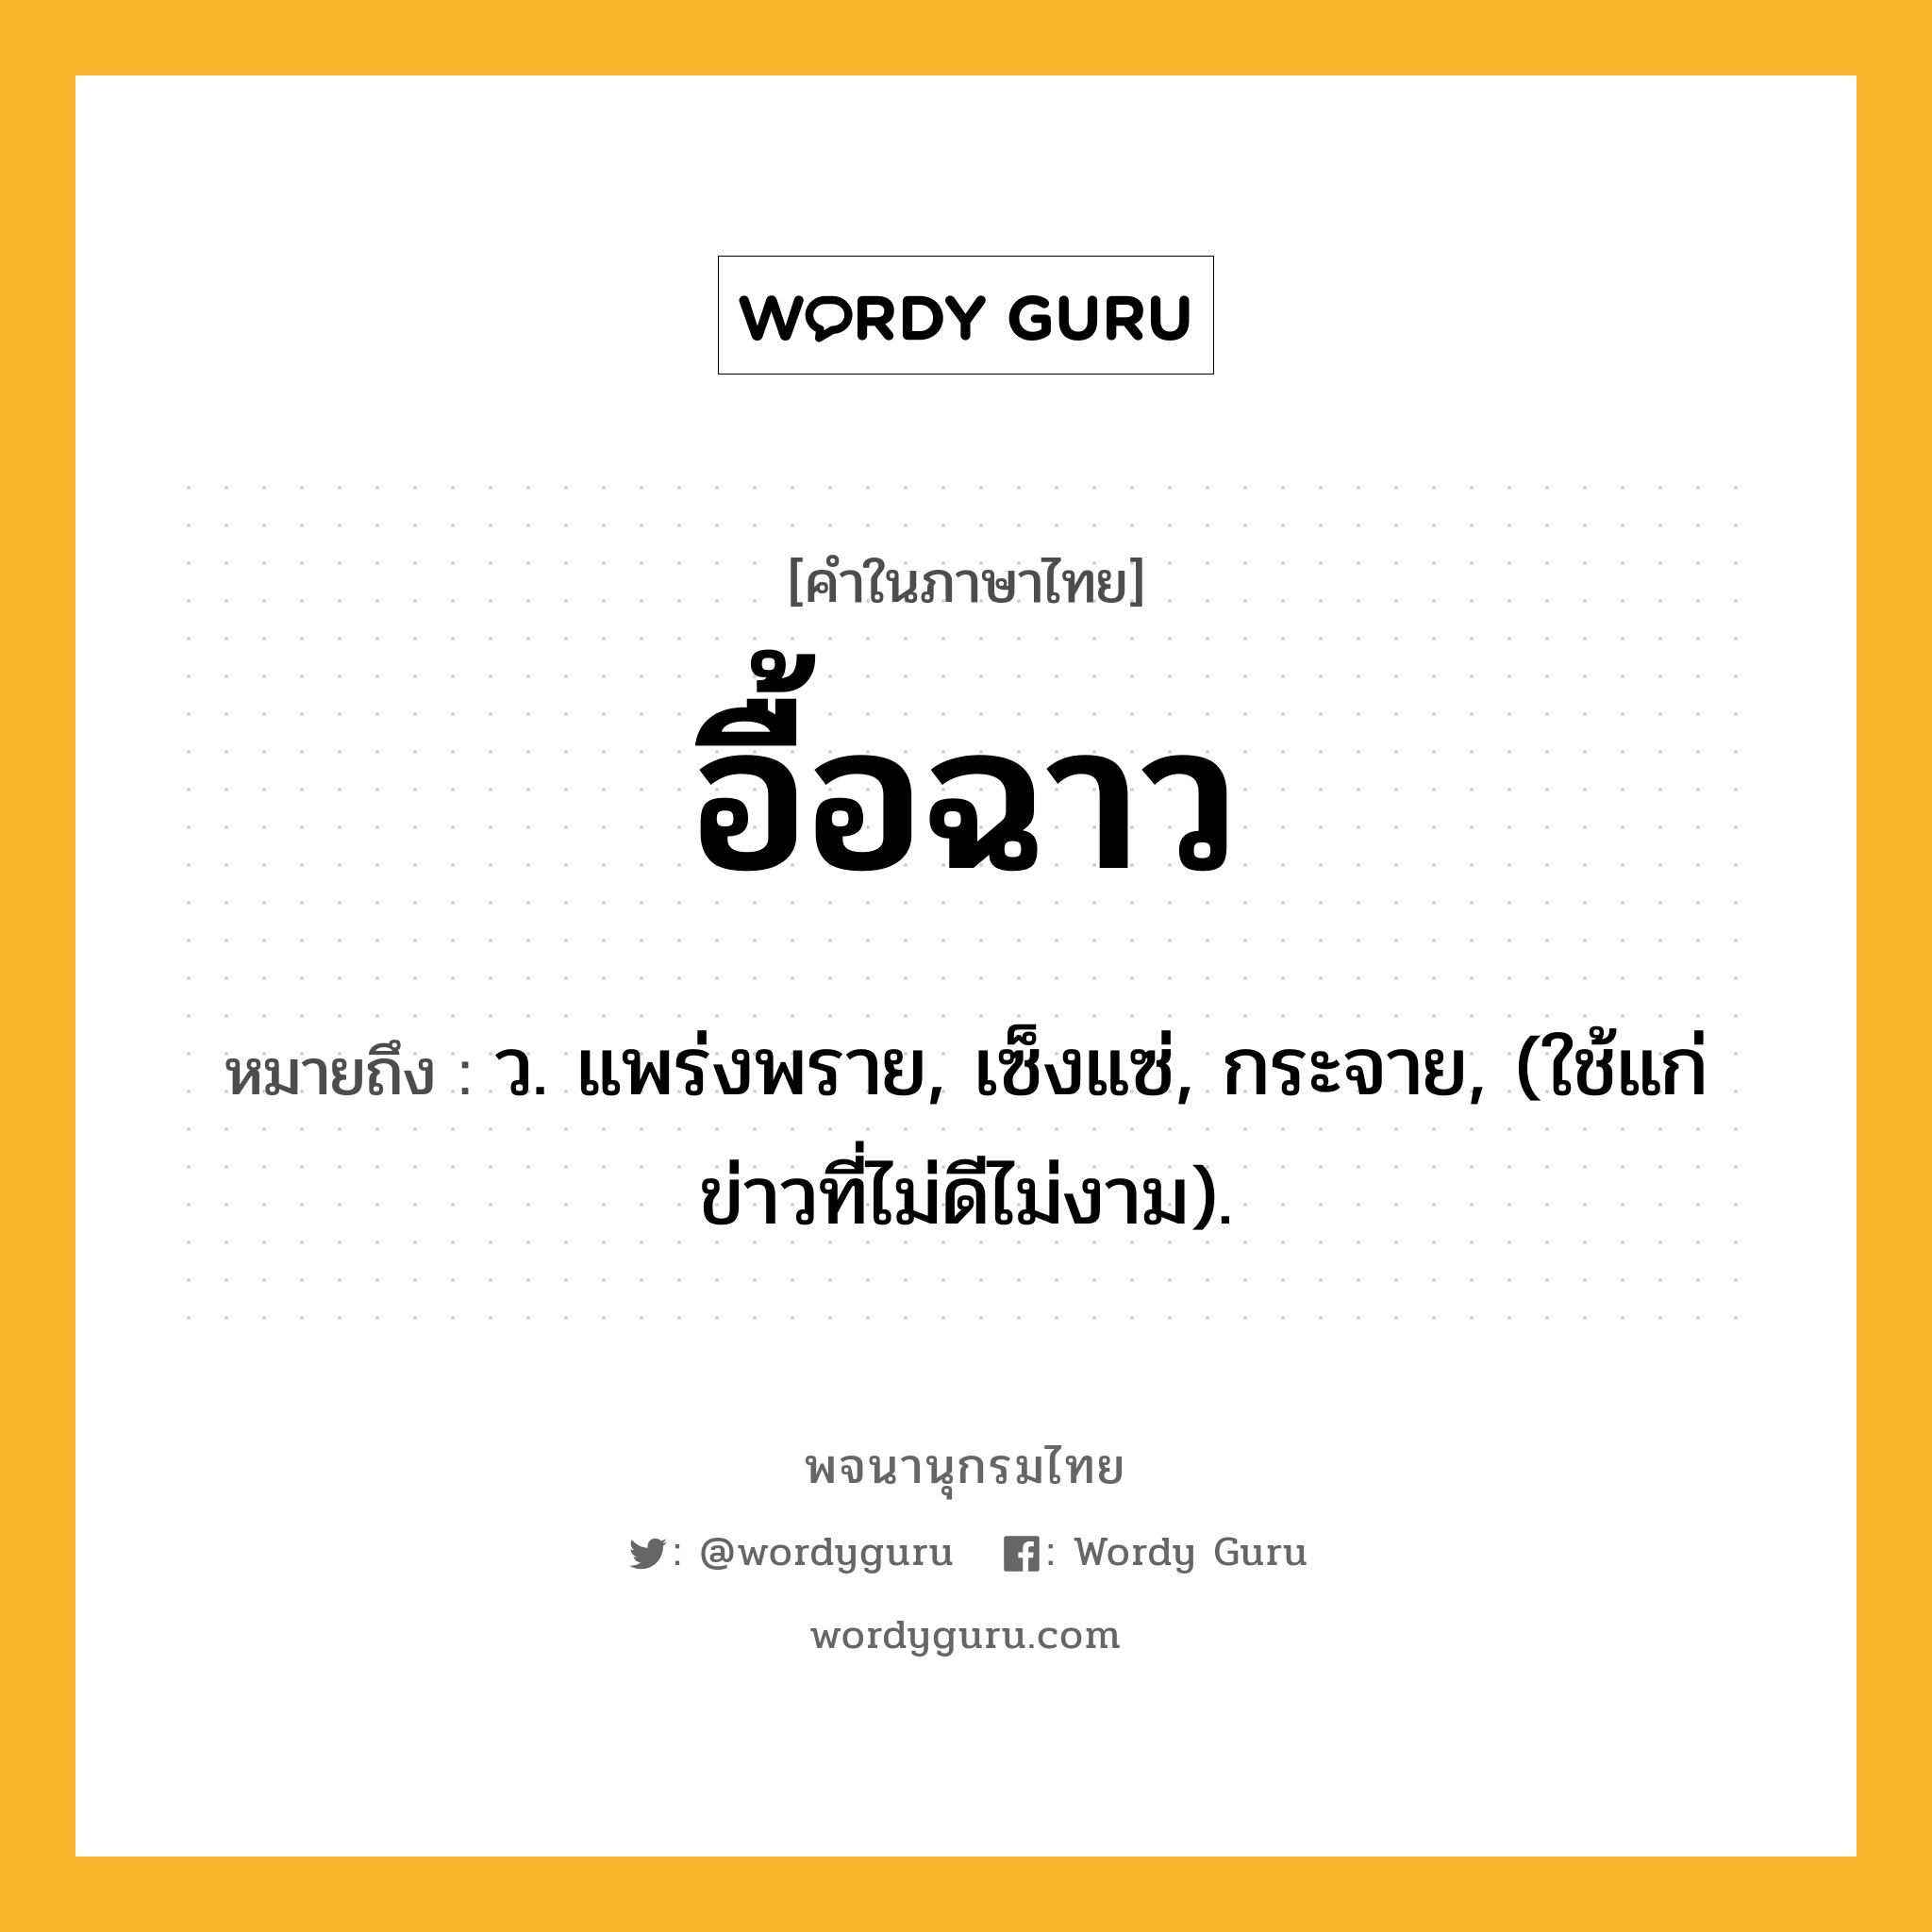 อื้อฉาว หมายถึงอะไร?, คำในภาษาไทย อื้อฉาว หมายถึง ว. แพร่งพราย, เซ็งแซ่, กระจาย, (ใช้แก่ข่าวที่ไม่ดีไม่งาม).